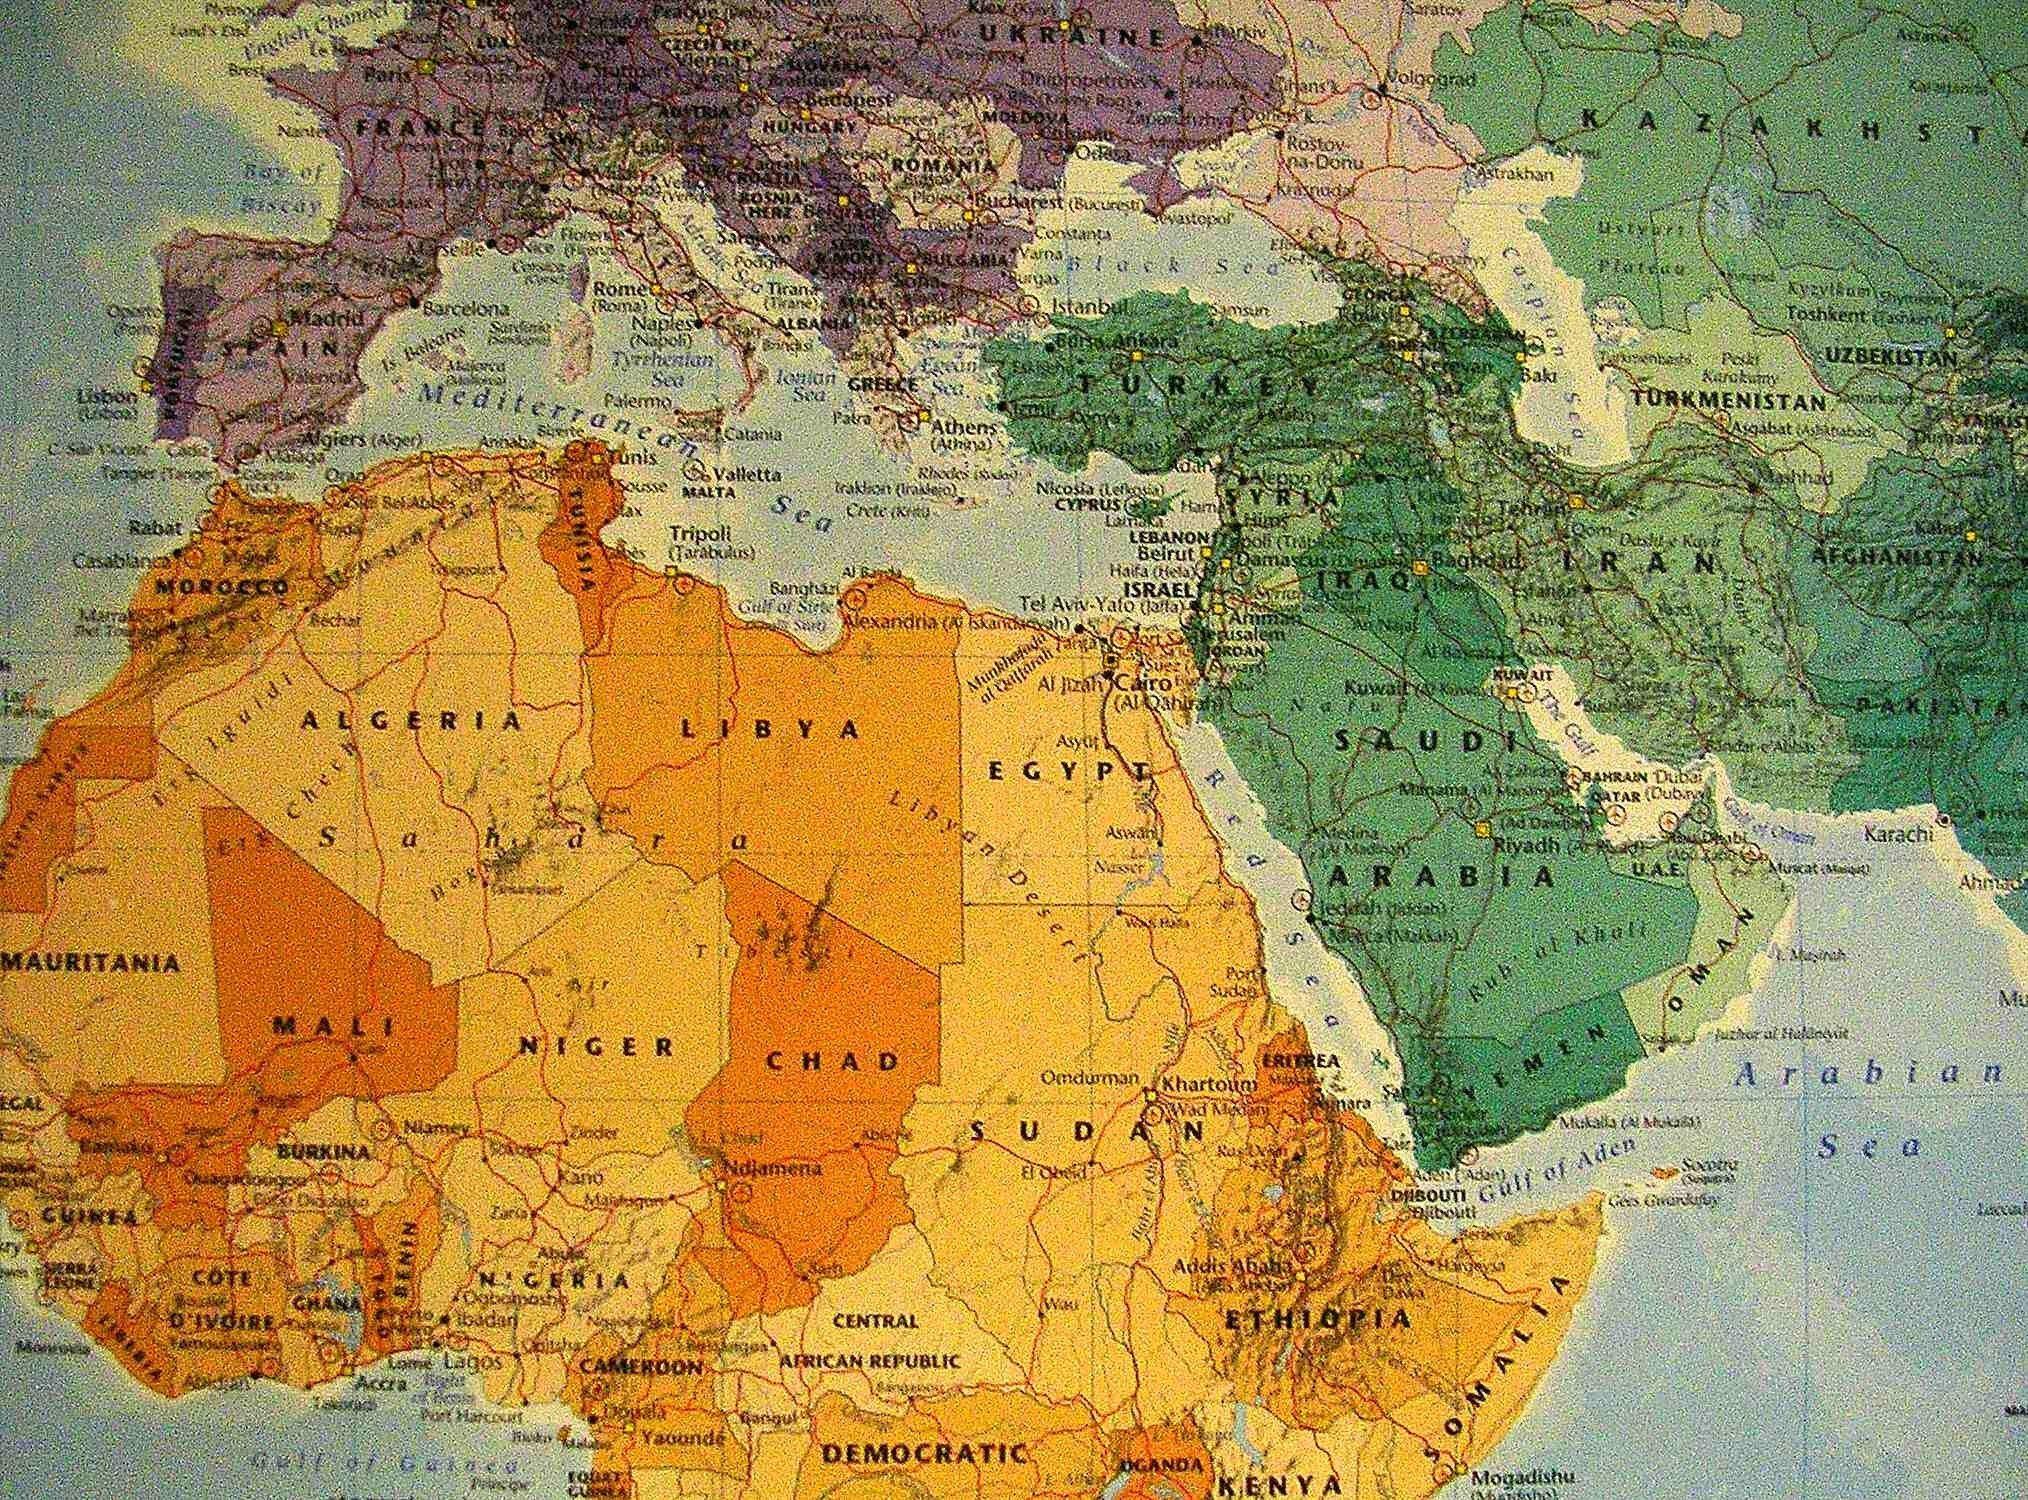 World Map Screensaver Wallpaper